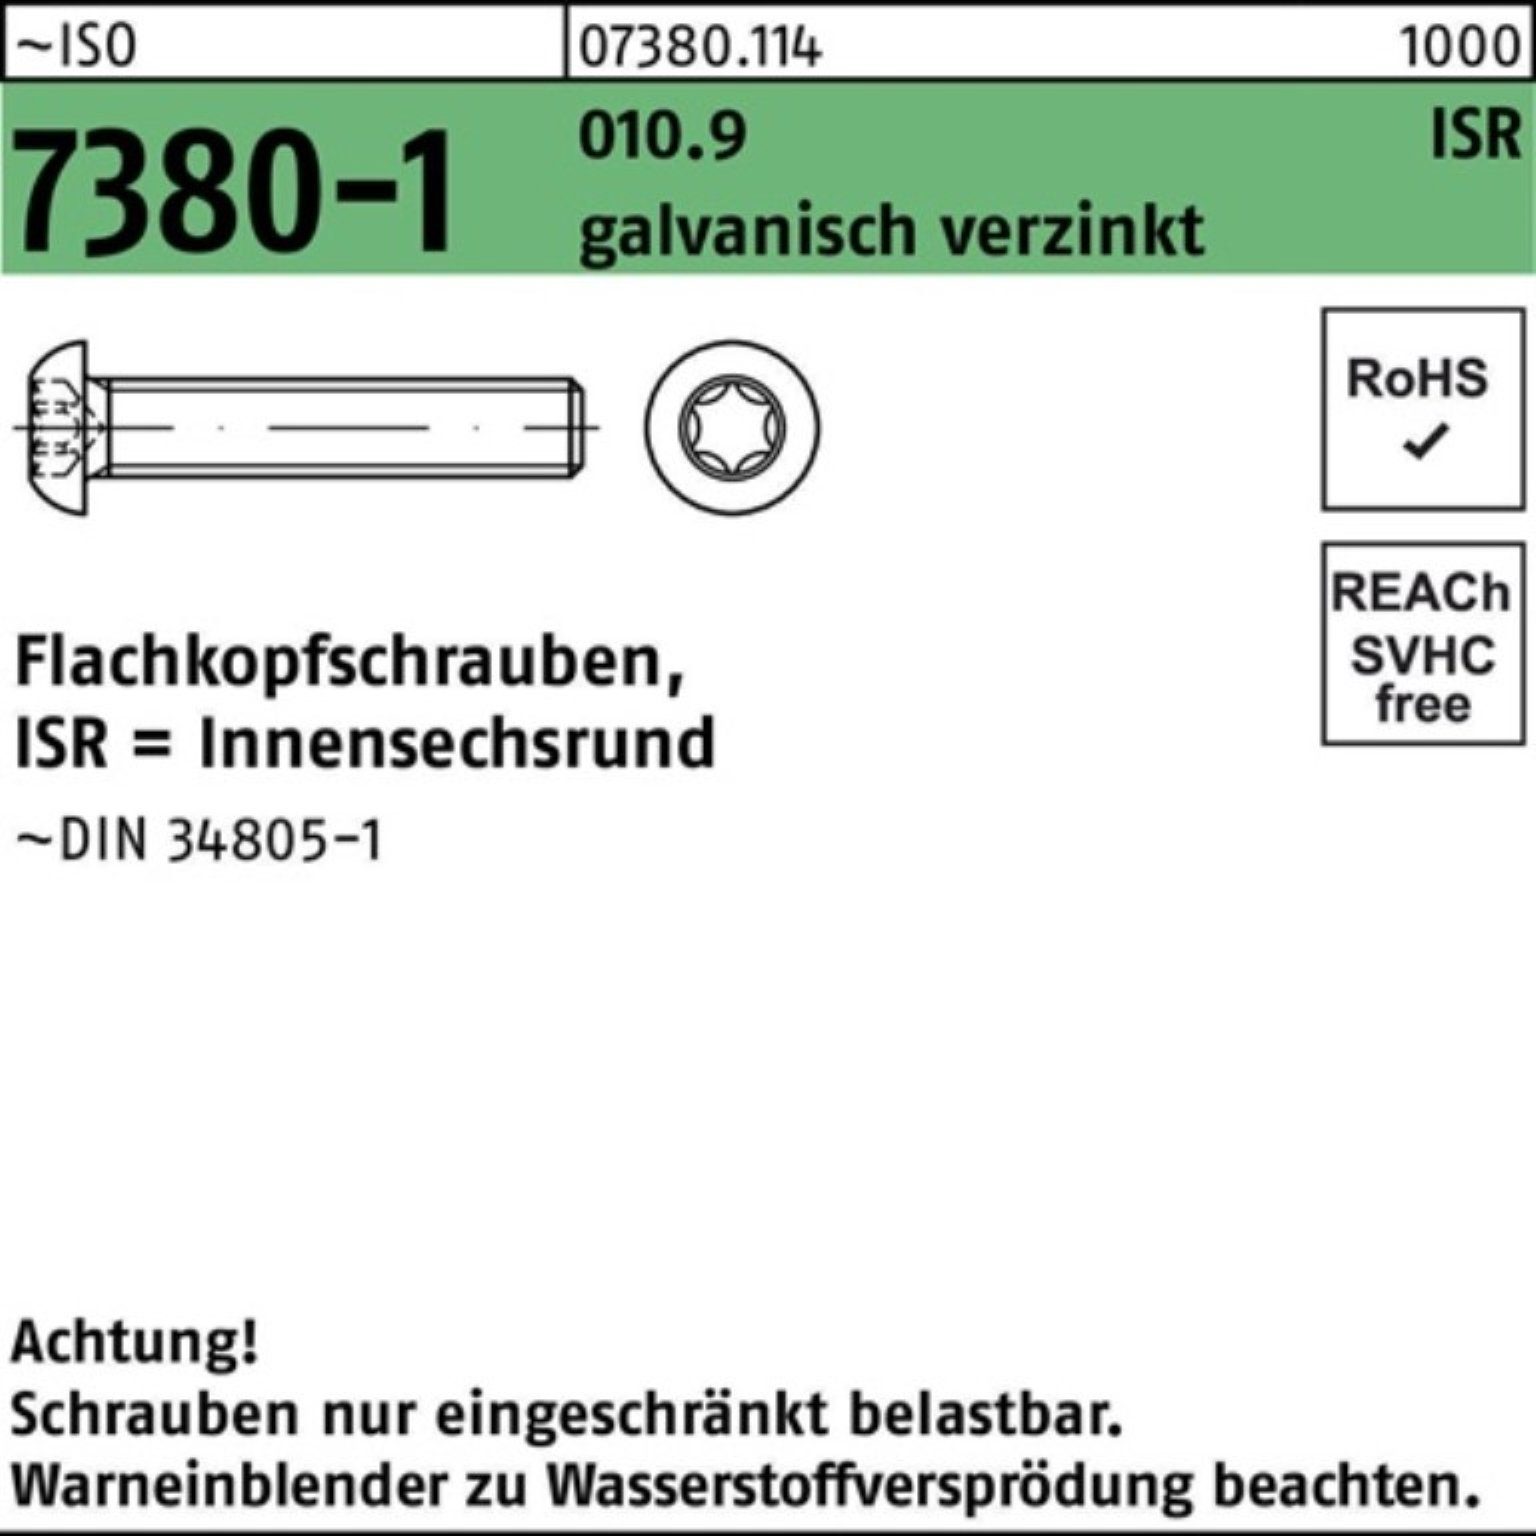 Reyher Schraube 200er Pack 010.9 galv.verz. 7380-1 M8x16-T40 ISO Flachkopfschraube ISR